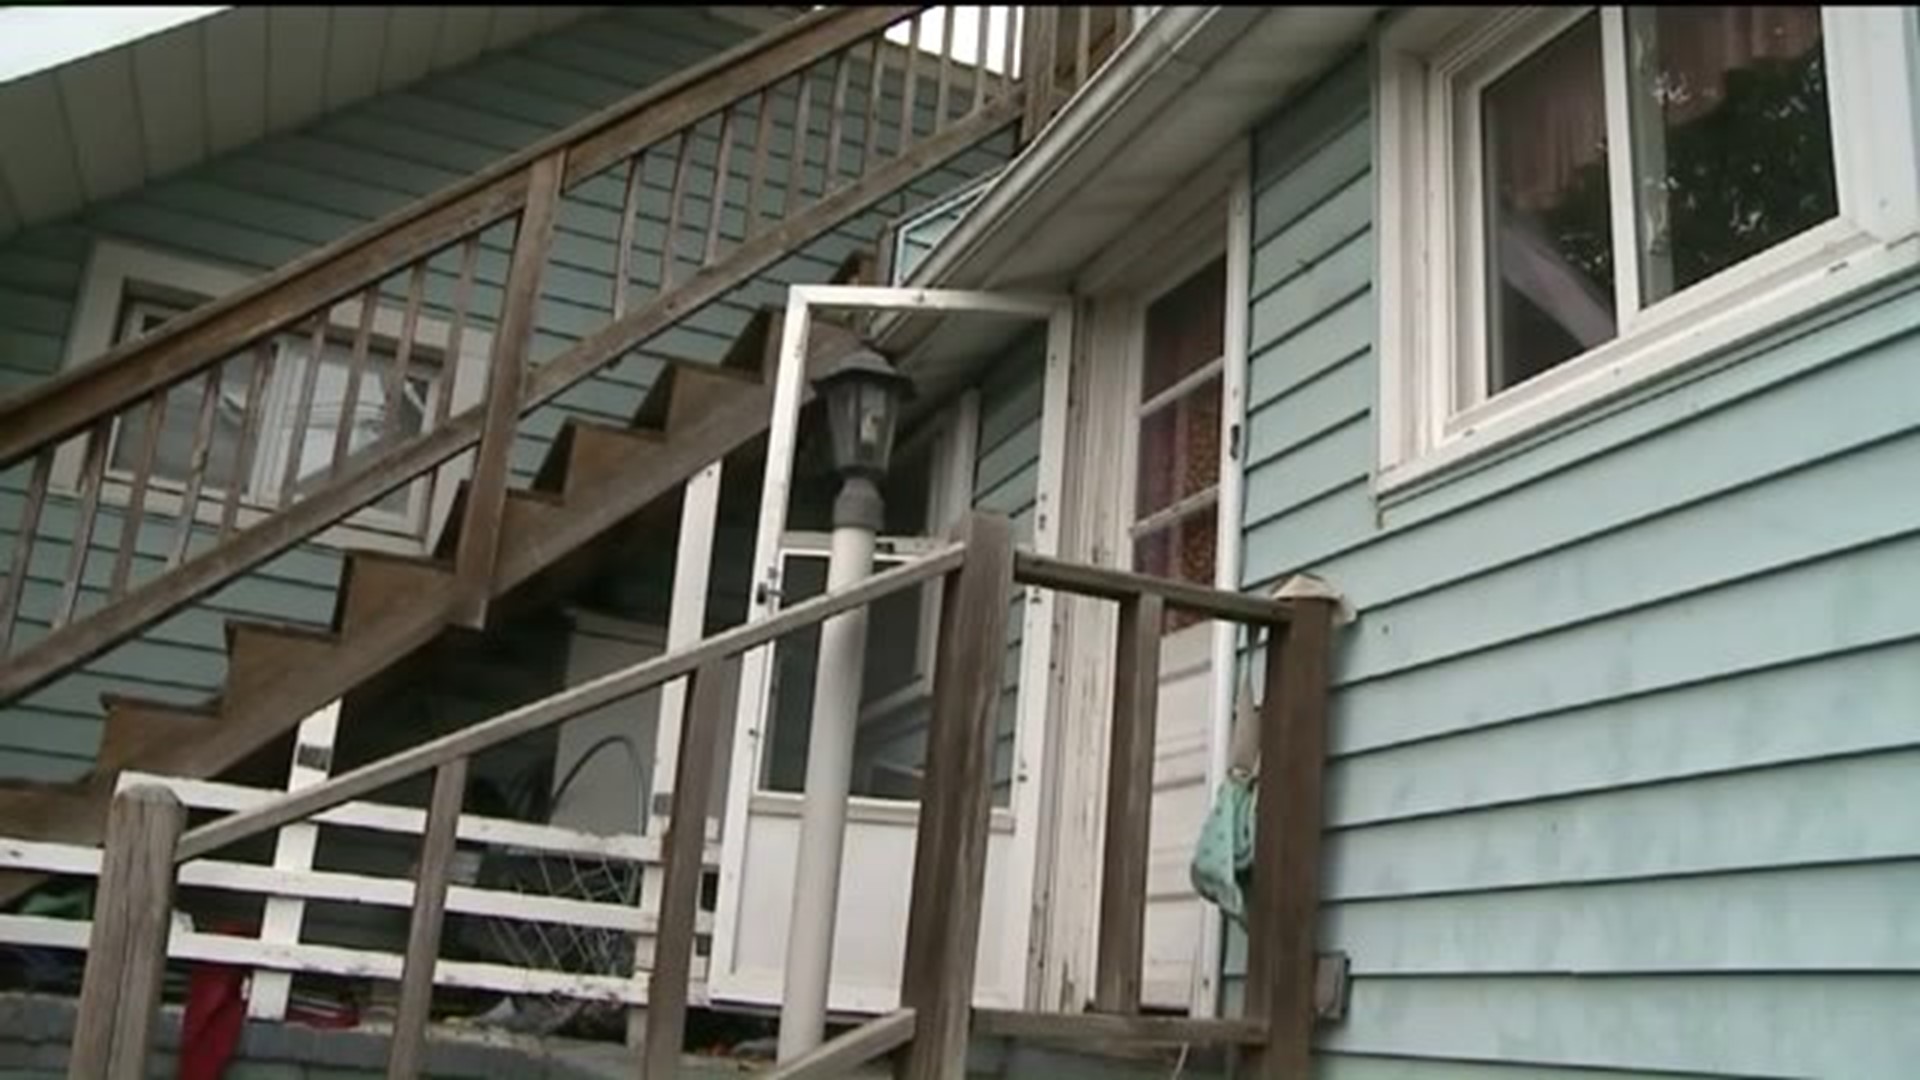 Police: Burglar Found Hiding in Family’s Home